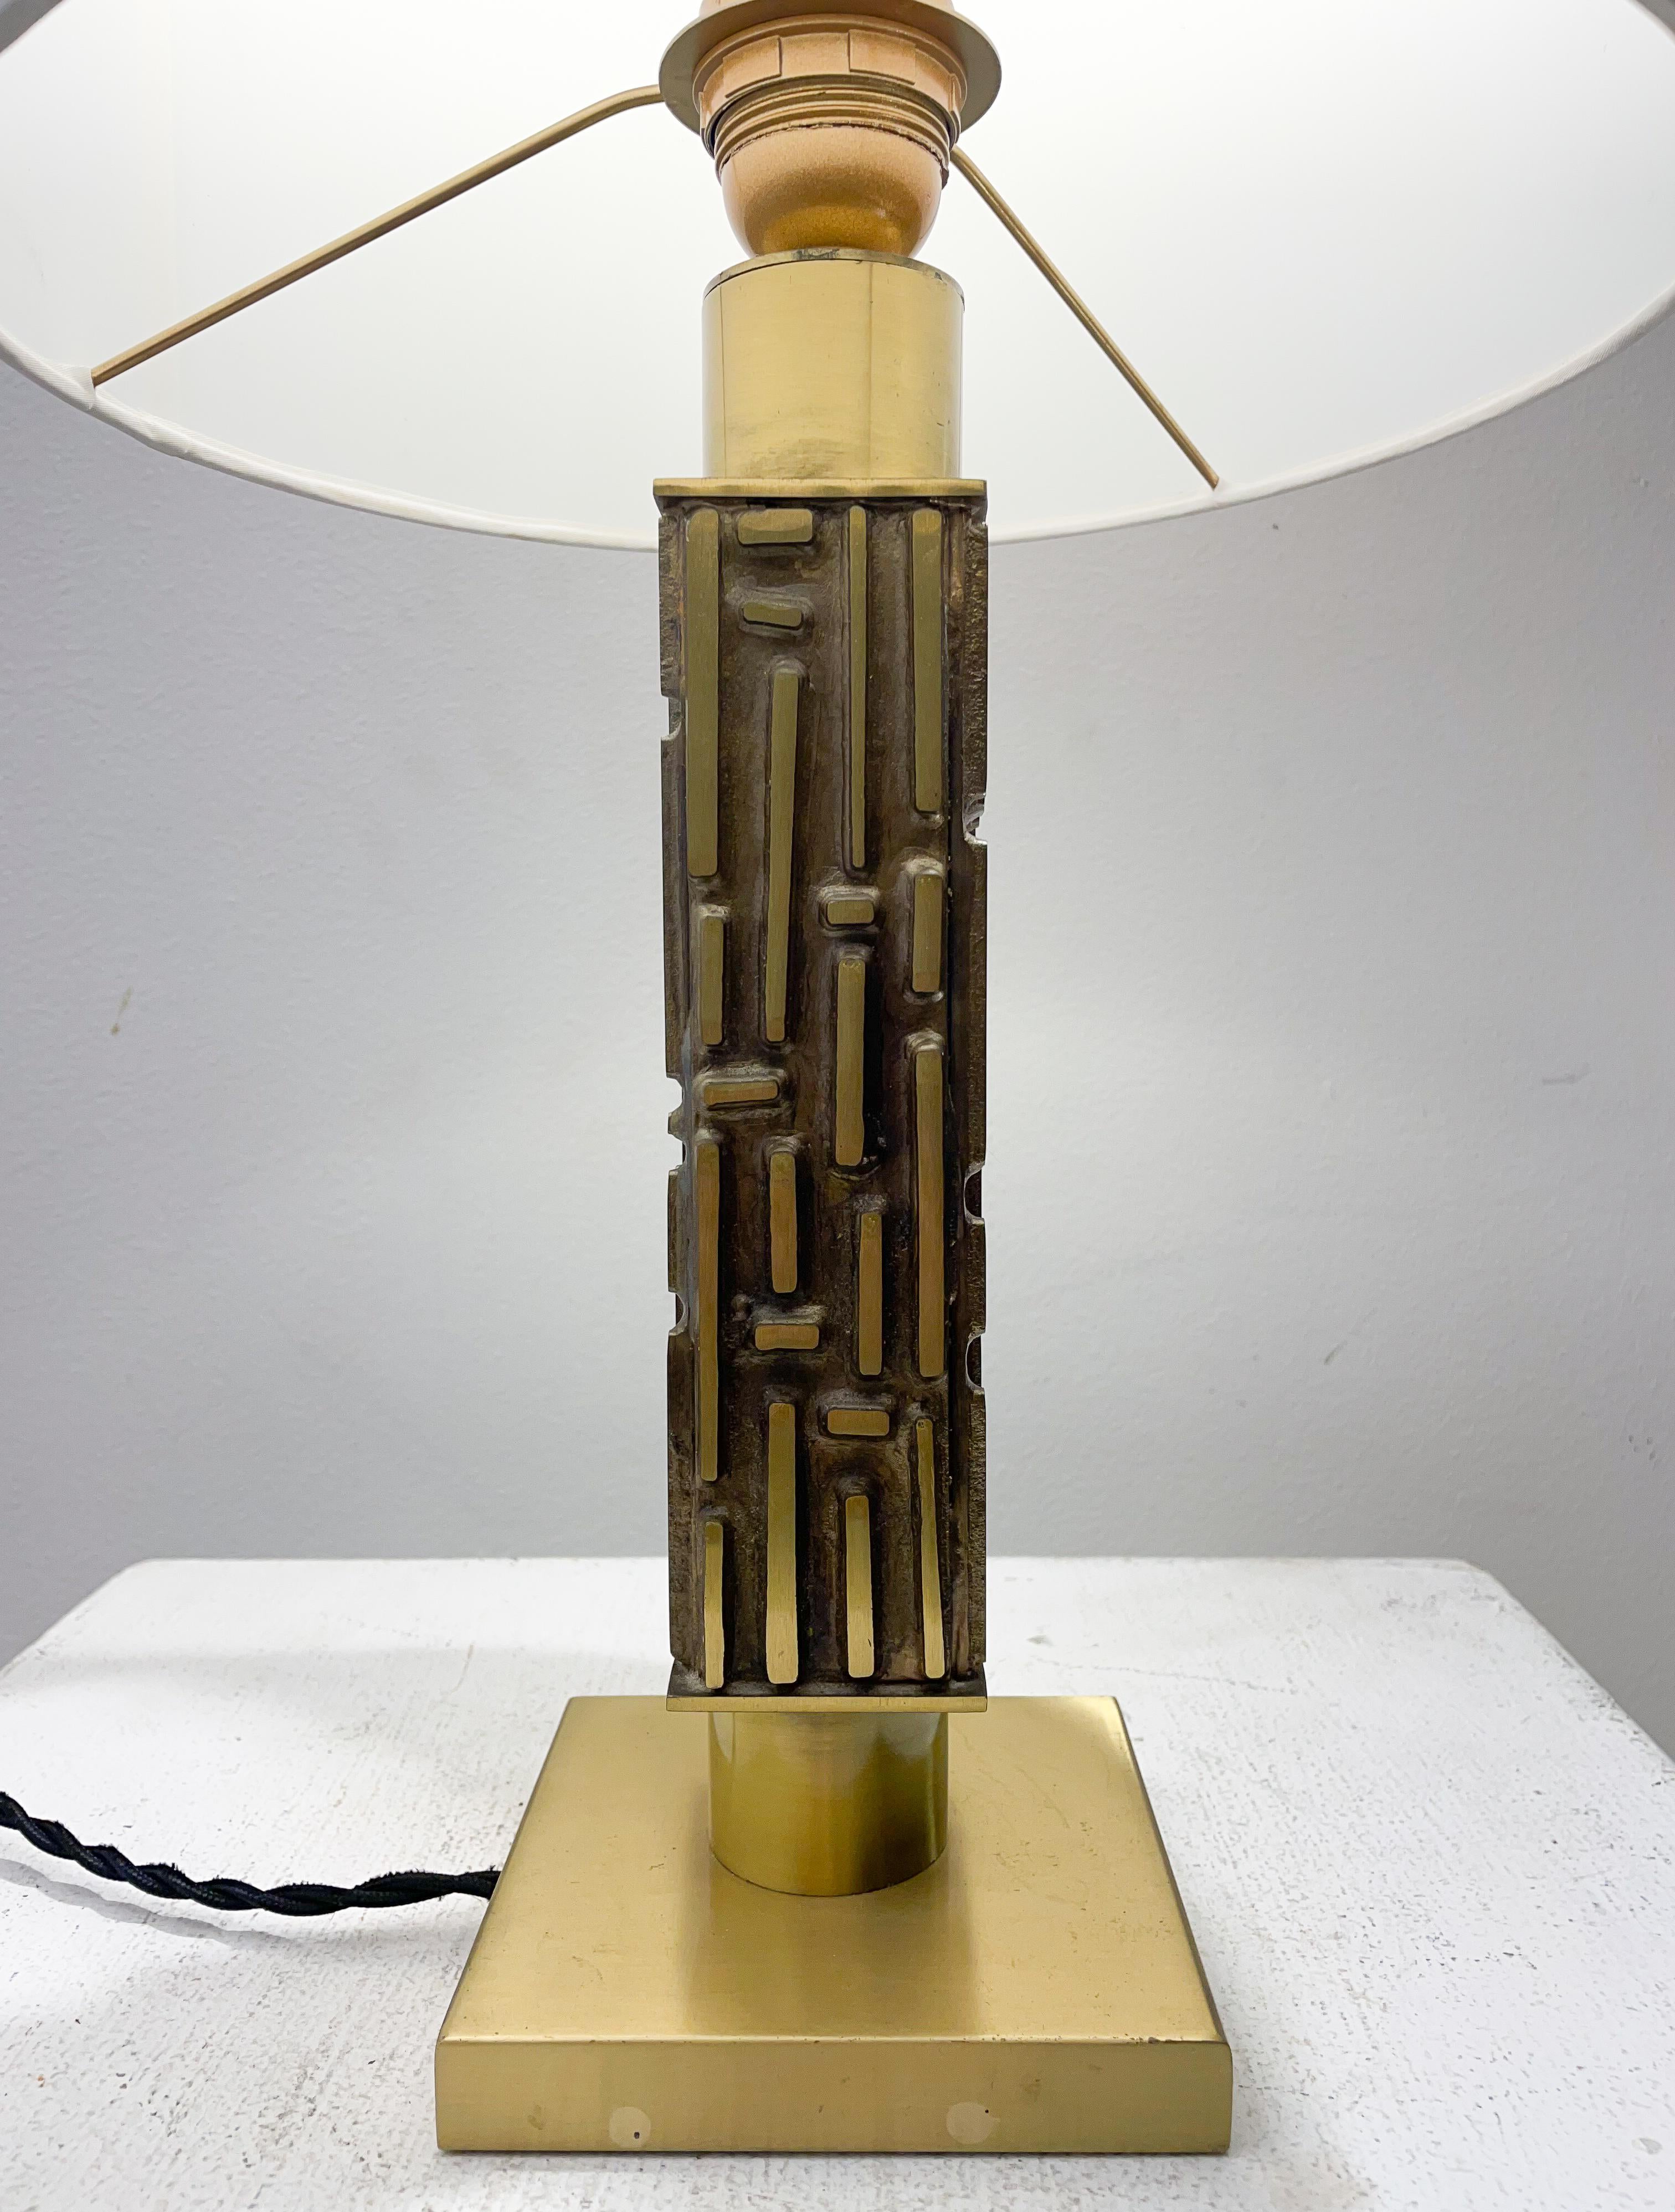 Lampe de bureau du milieu du siècle dernier en laiton et bronze de Luciano Frigerio, Italie, 1970

Nouvel abat-jour